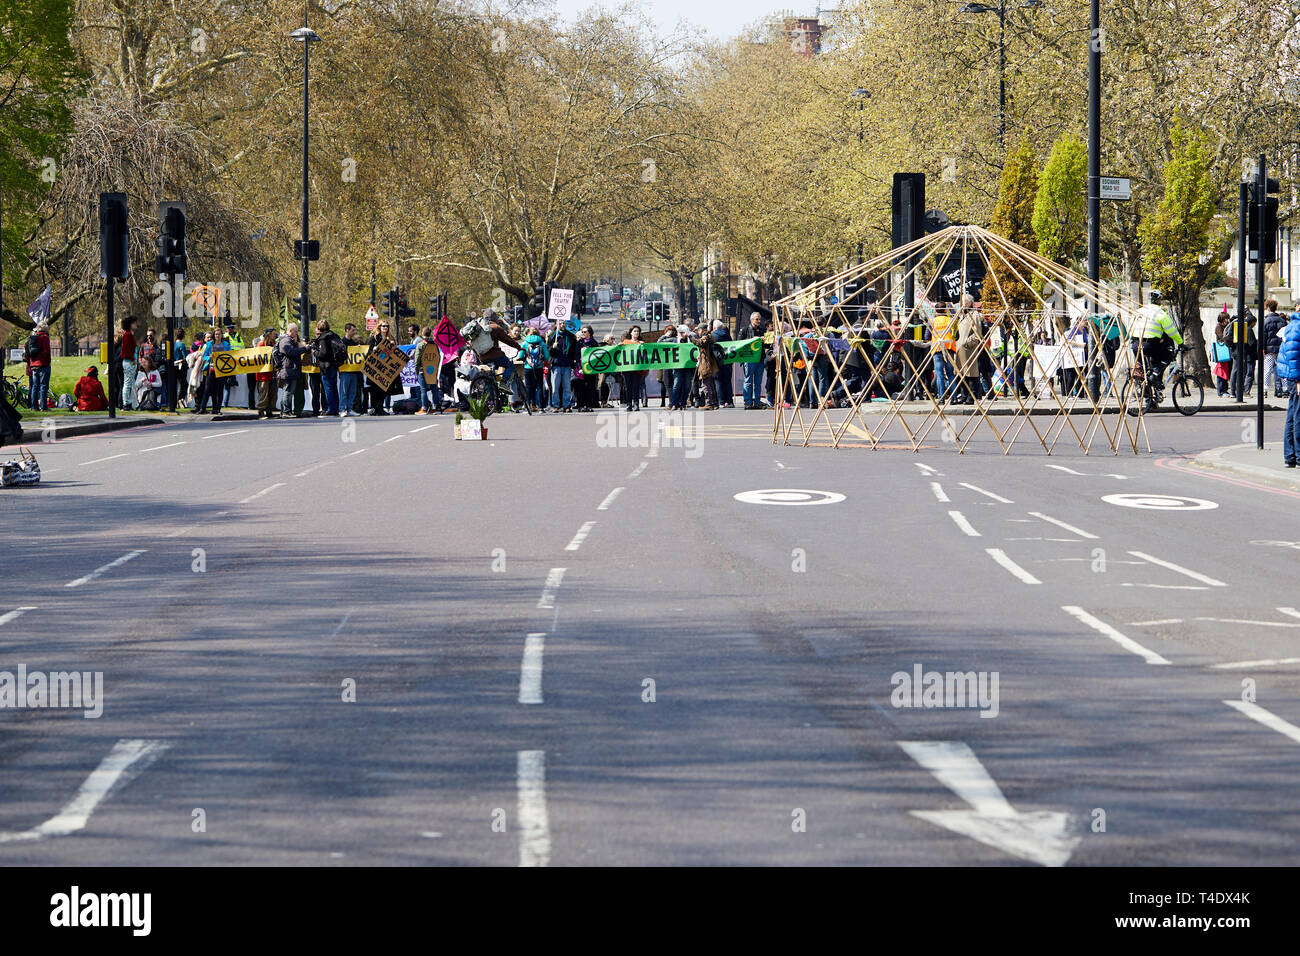 Londres, Royaume-Uni. - 15 Avril 2019 : Les membres de la rébellion Extinction bloquer les routes menant à Marble Arch à promouvoir la sensibilisation aux changements climatiques. Banque D'Images